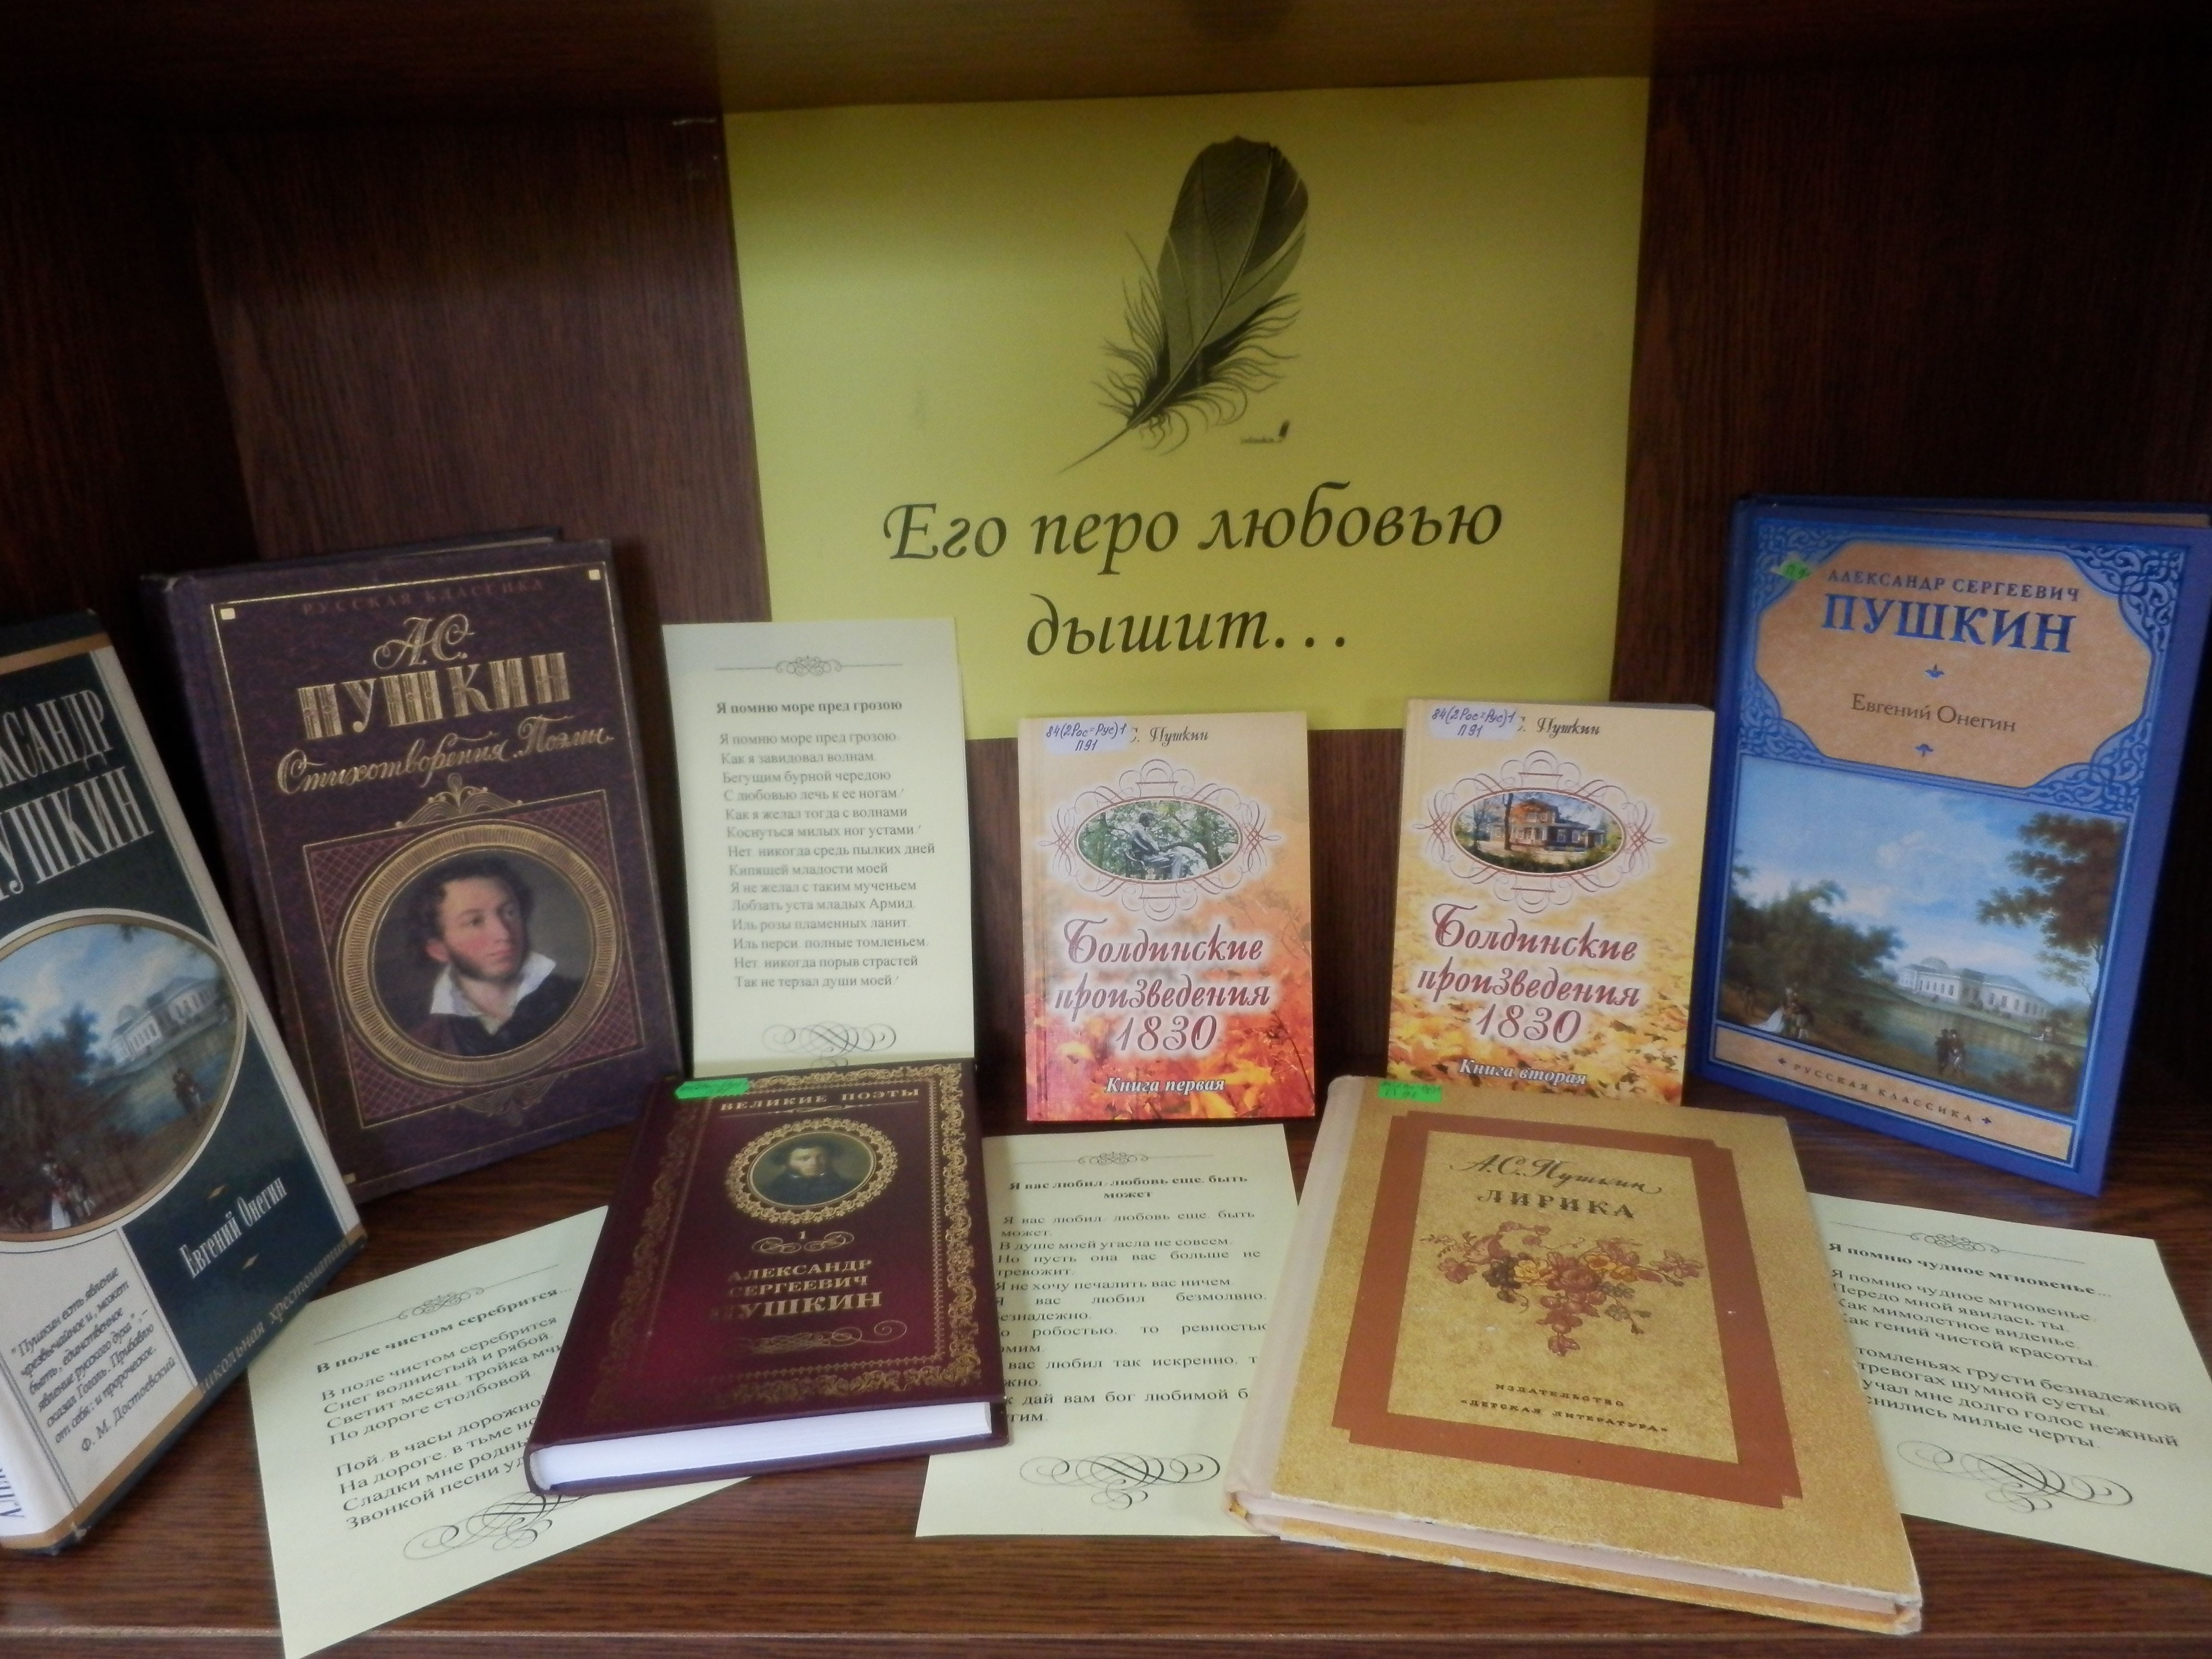 Пушкин книги